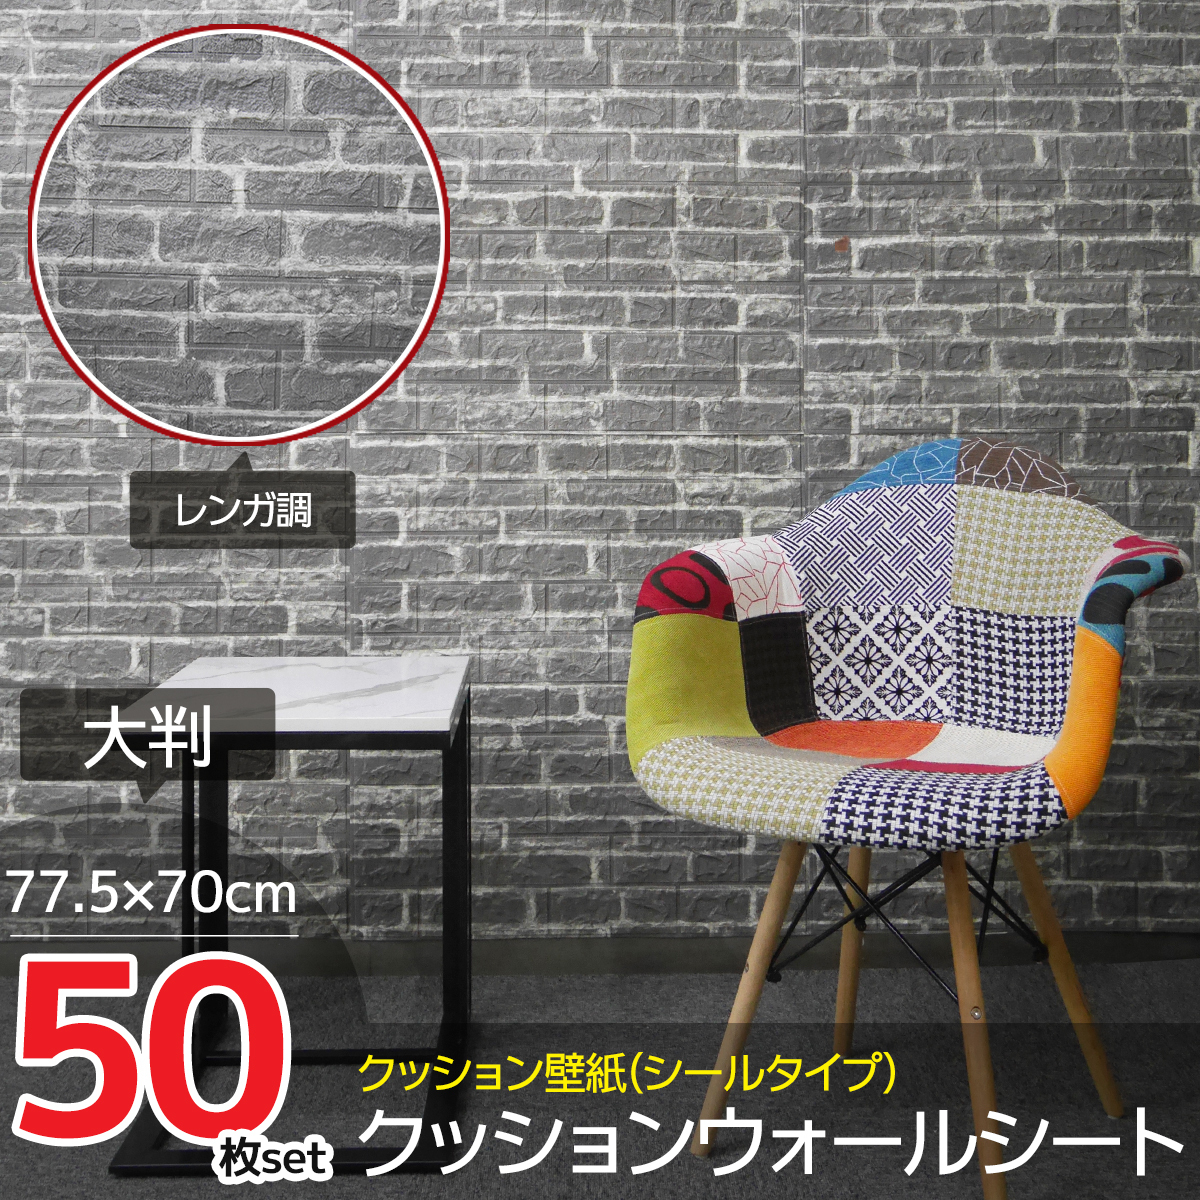 50枚set DIY 3D 壁紙 クッションブリック壁紙シール デザイン立体パネル レンガ調 ウォールステッカー クッション 簡単リフォーム【KB-73】 